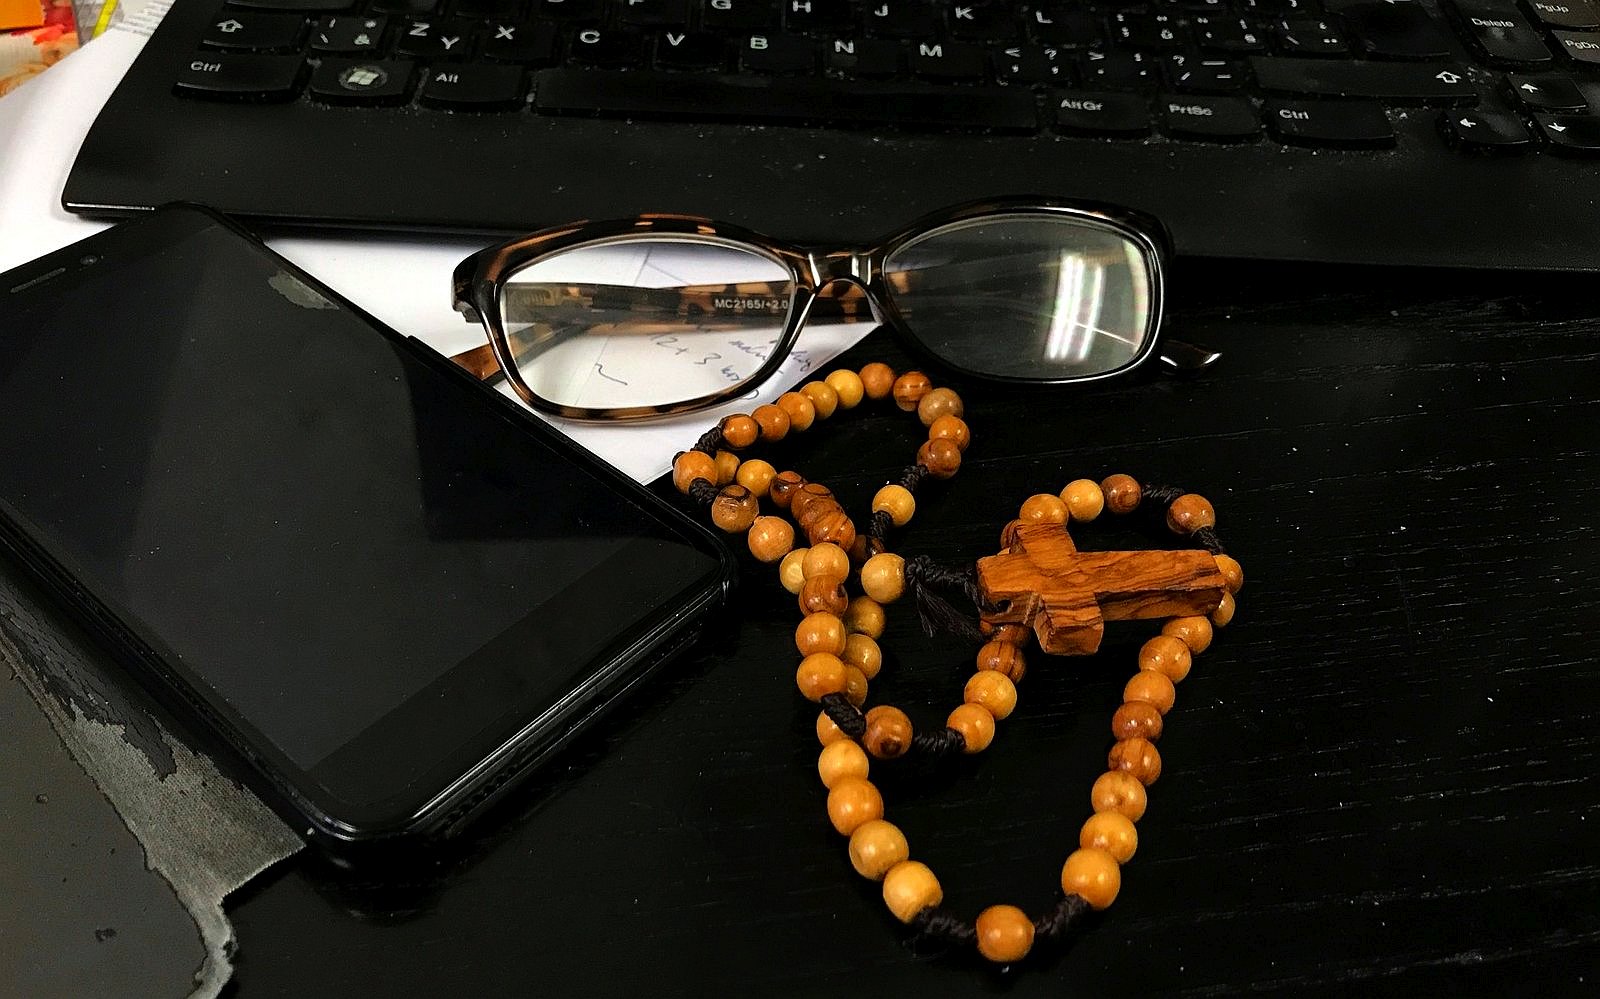 růženec na stole, brýle, klávesnice, mobil / -ima-